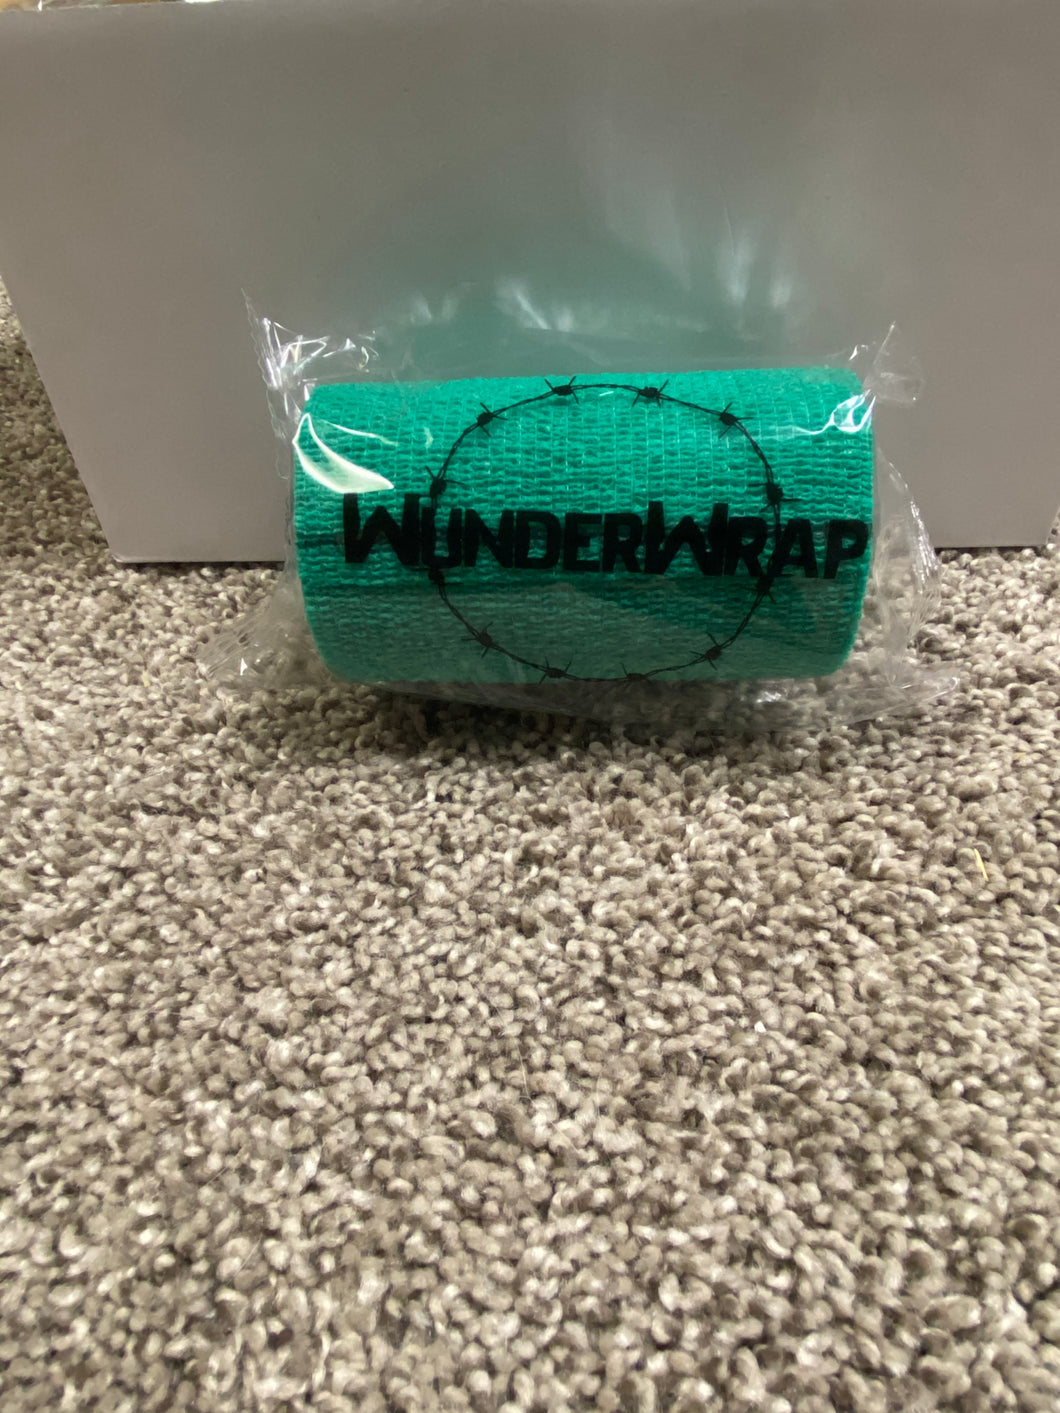 WunderWrap - Cohesive Bandage - Box of 12 (DISCONTINUED)